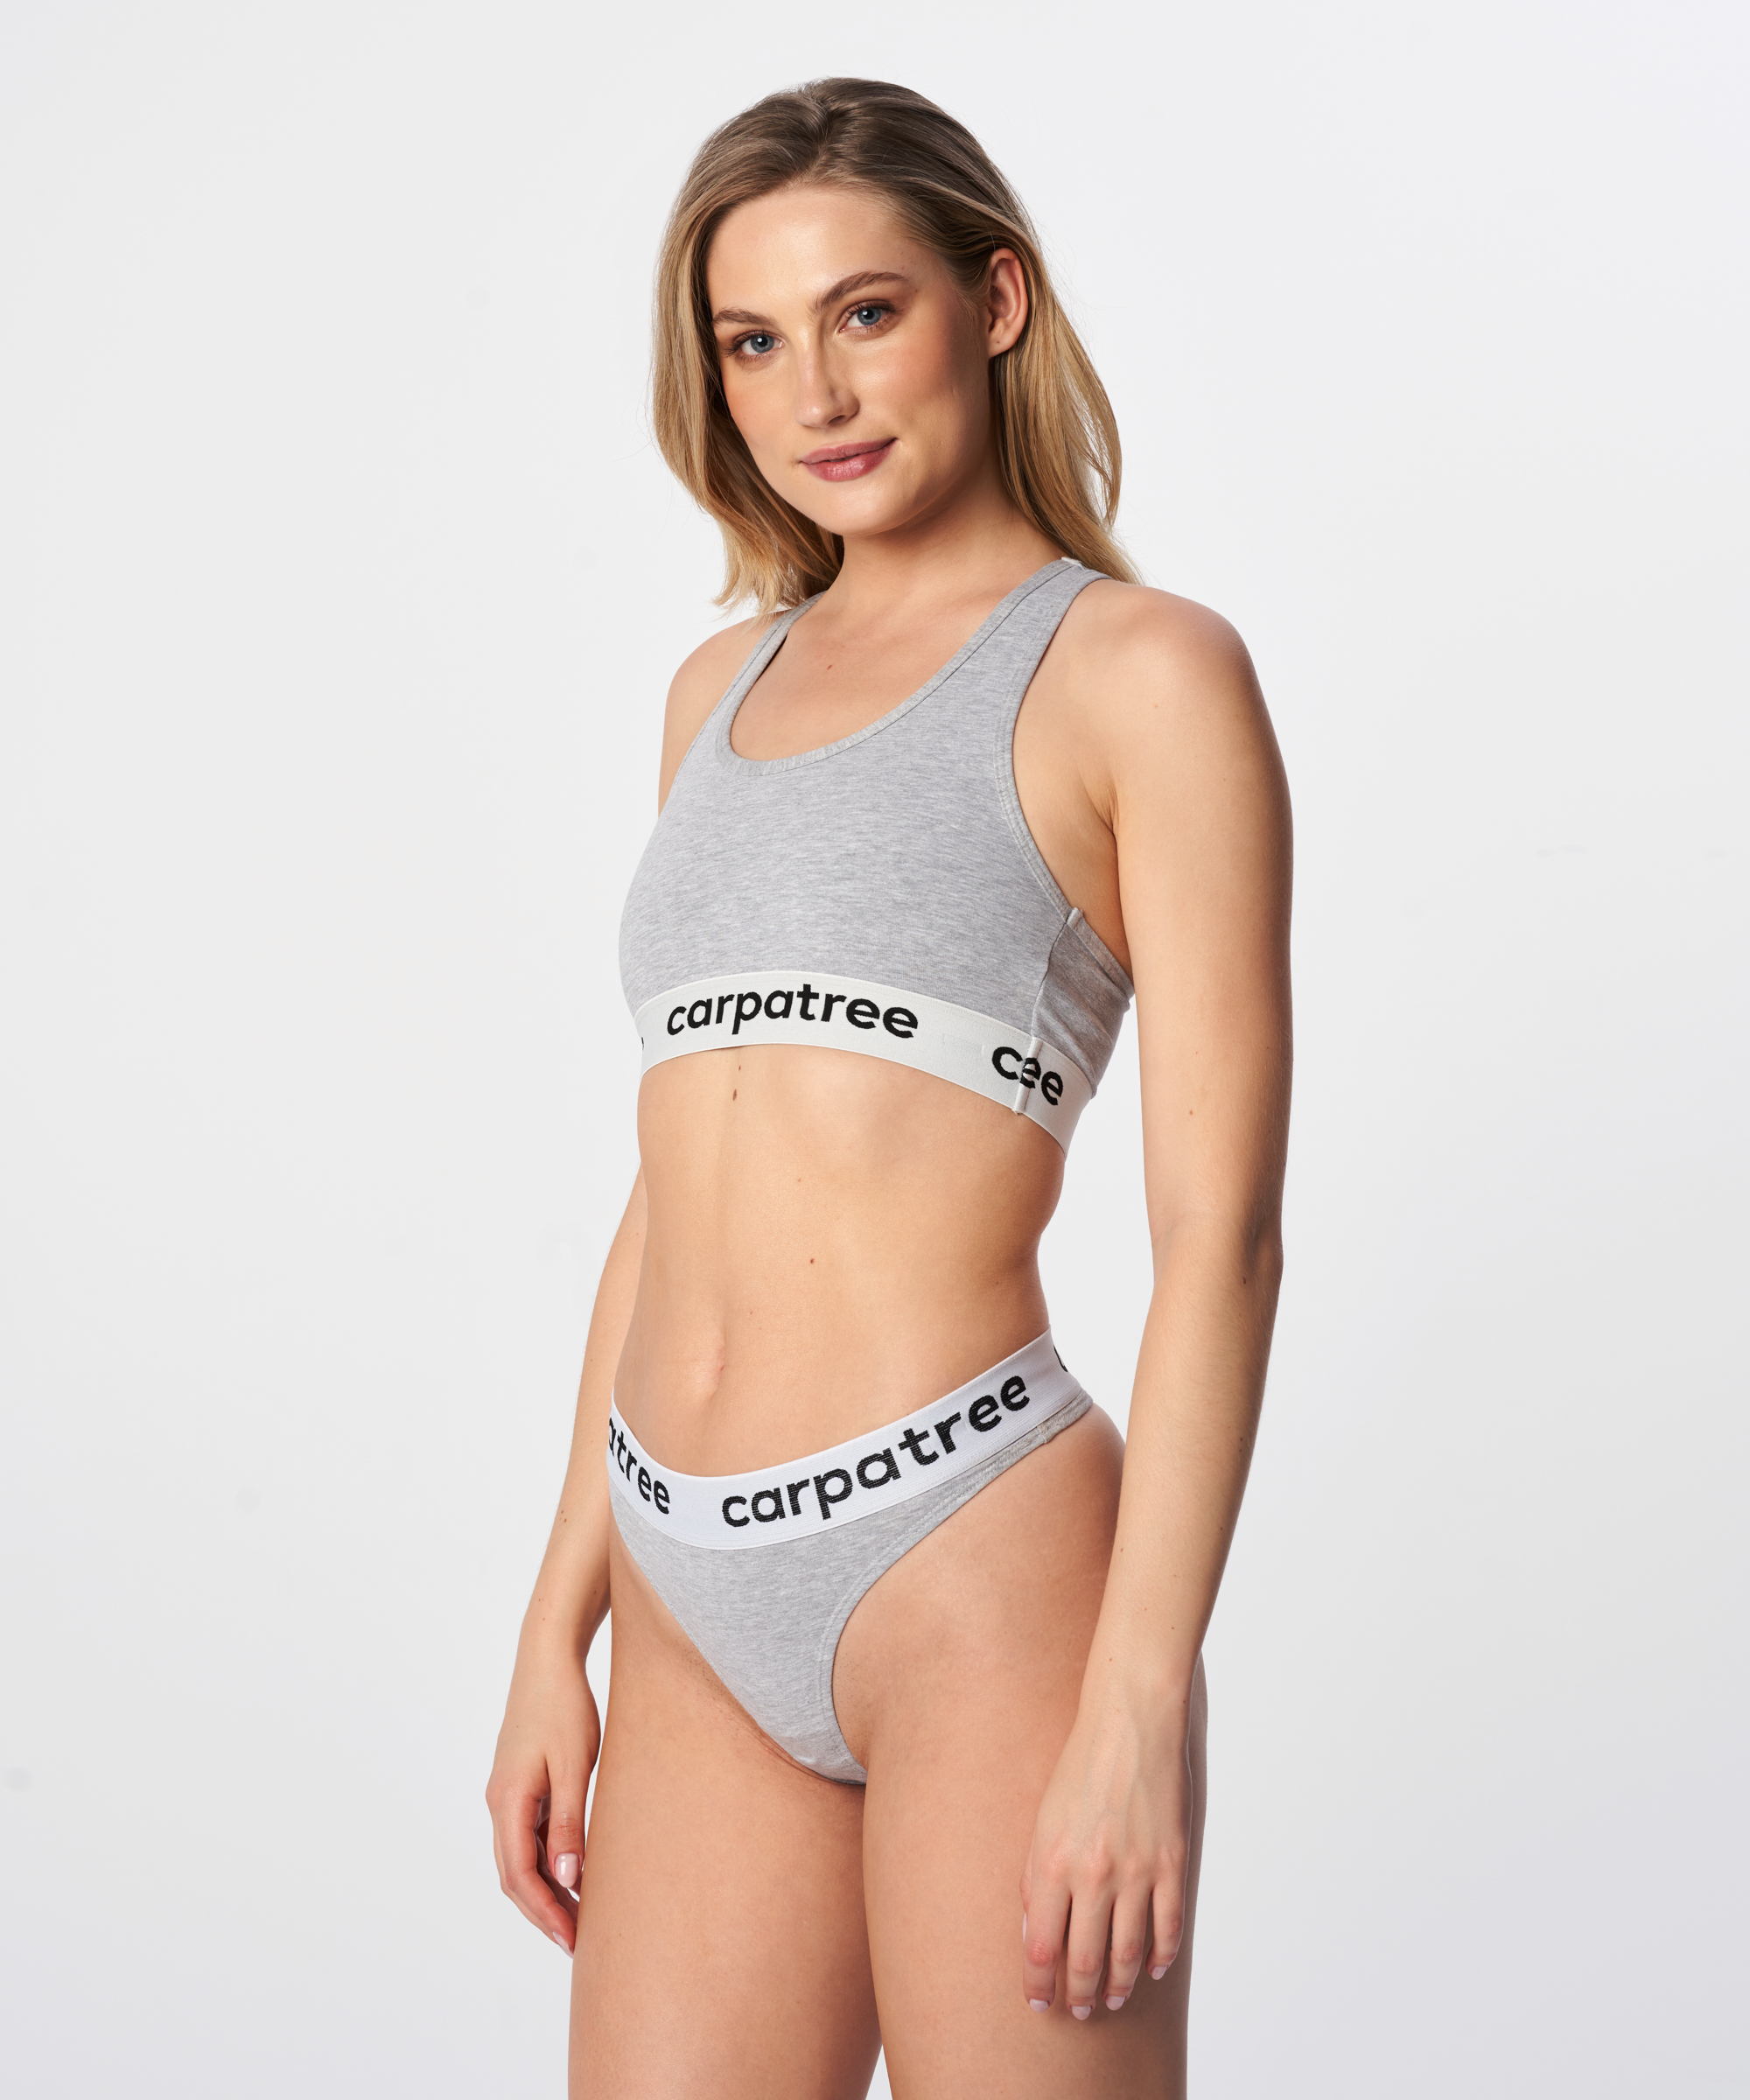 Cotton and seamless women's underwear, sports underwear - Carpatree